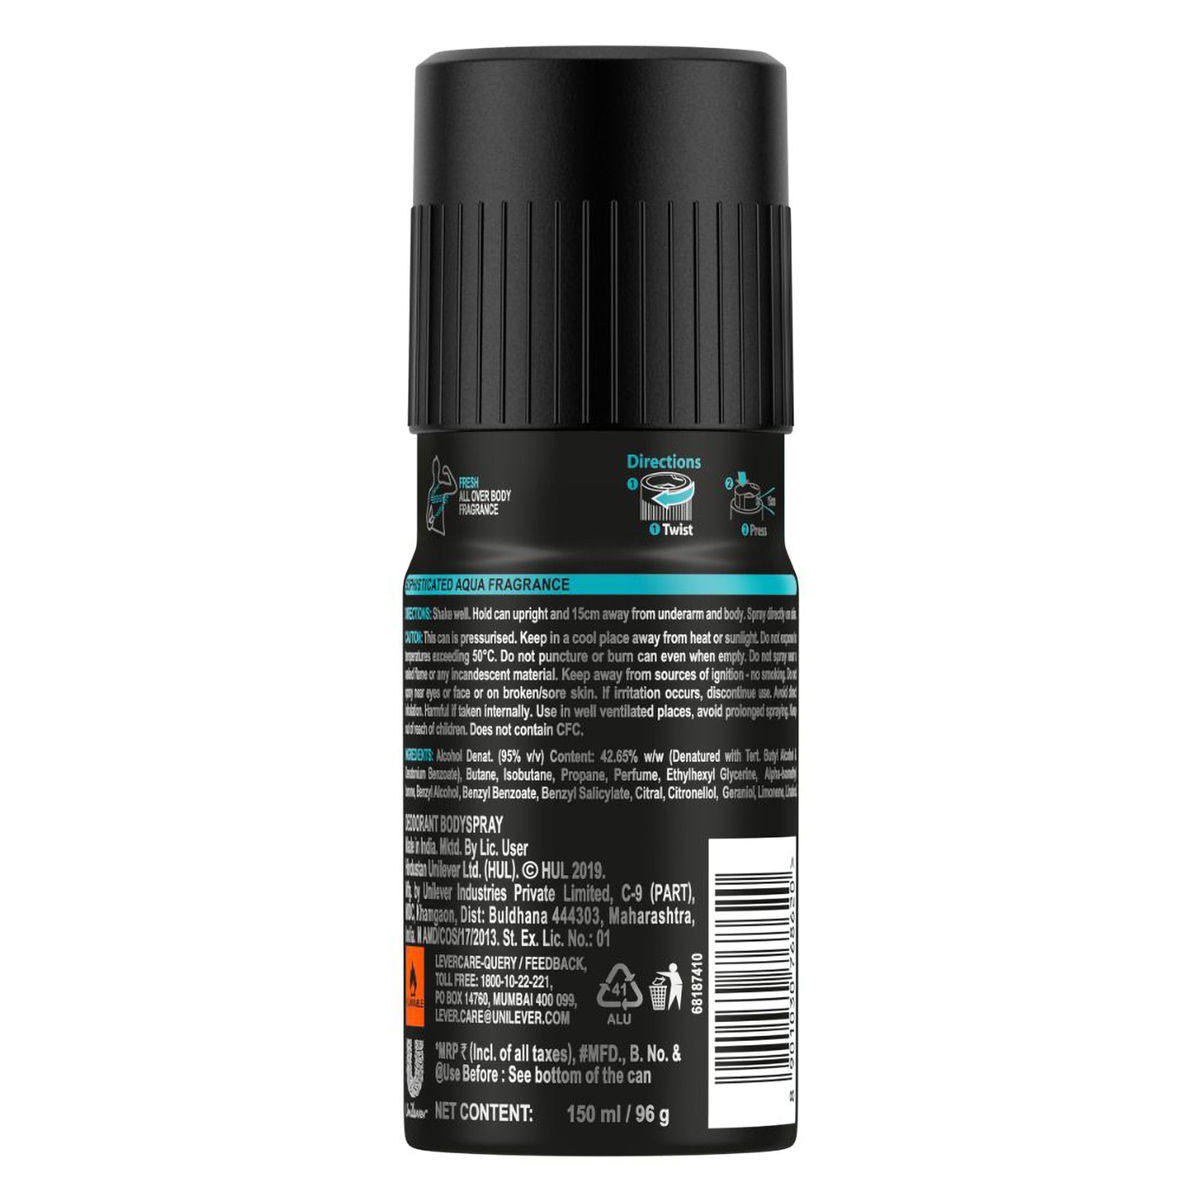 Axe Recharge Marine Splash Long Lasting Deodorant For Men, 150 ml, Pack of 1 